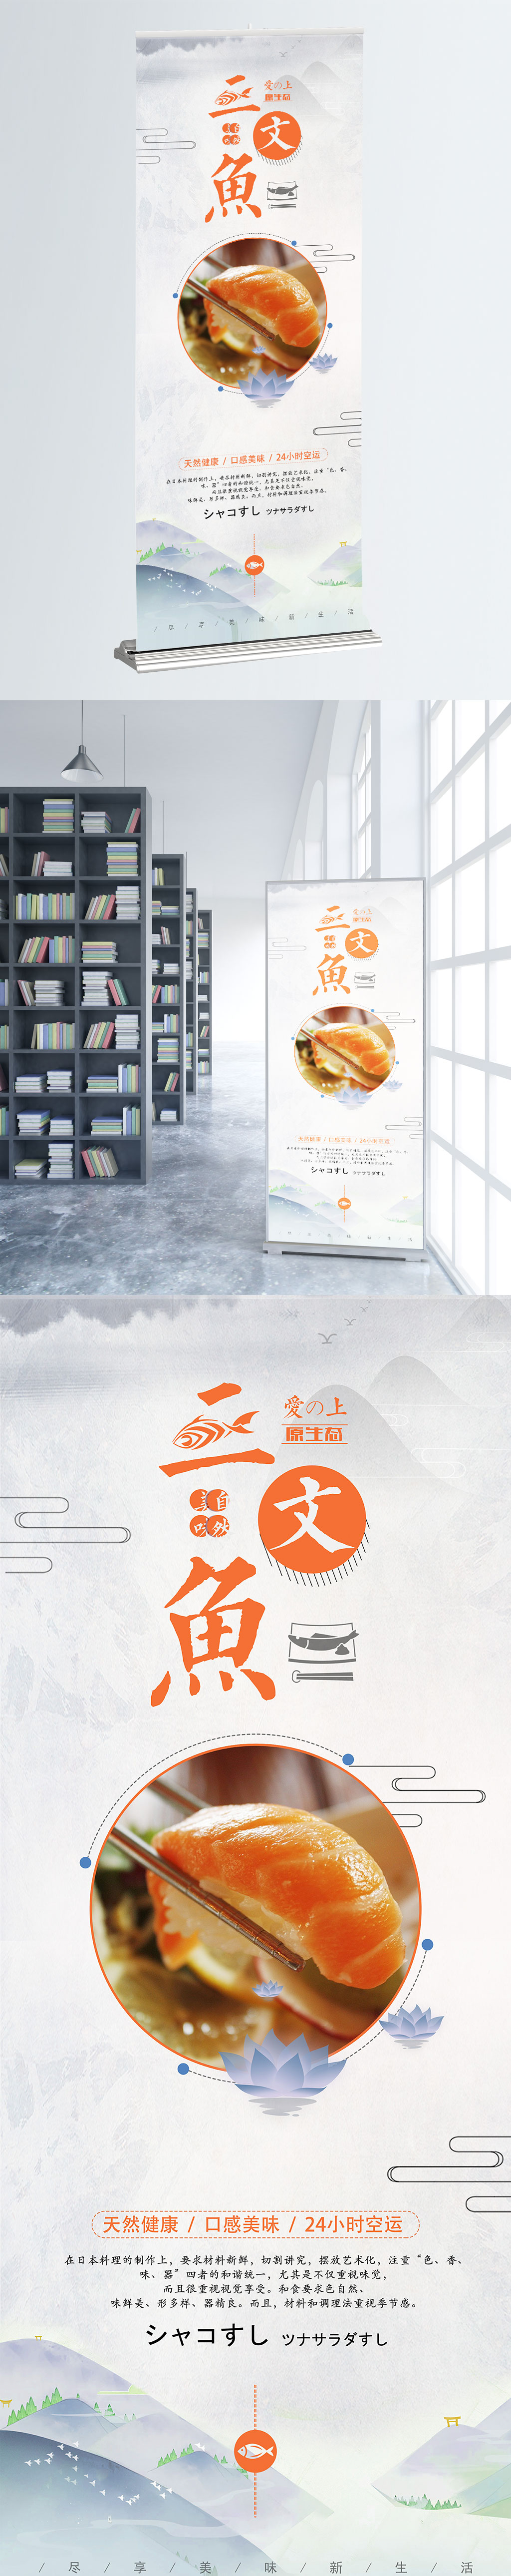 中国风三文鱼美食宣传促销海报图片